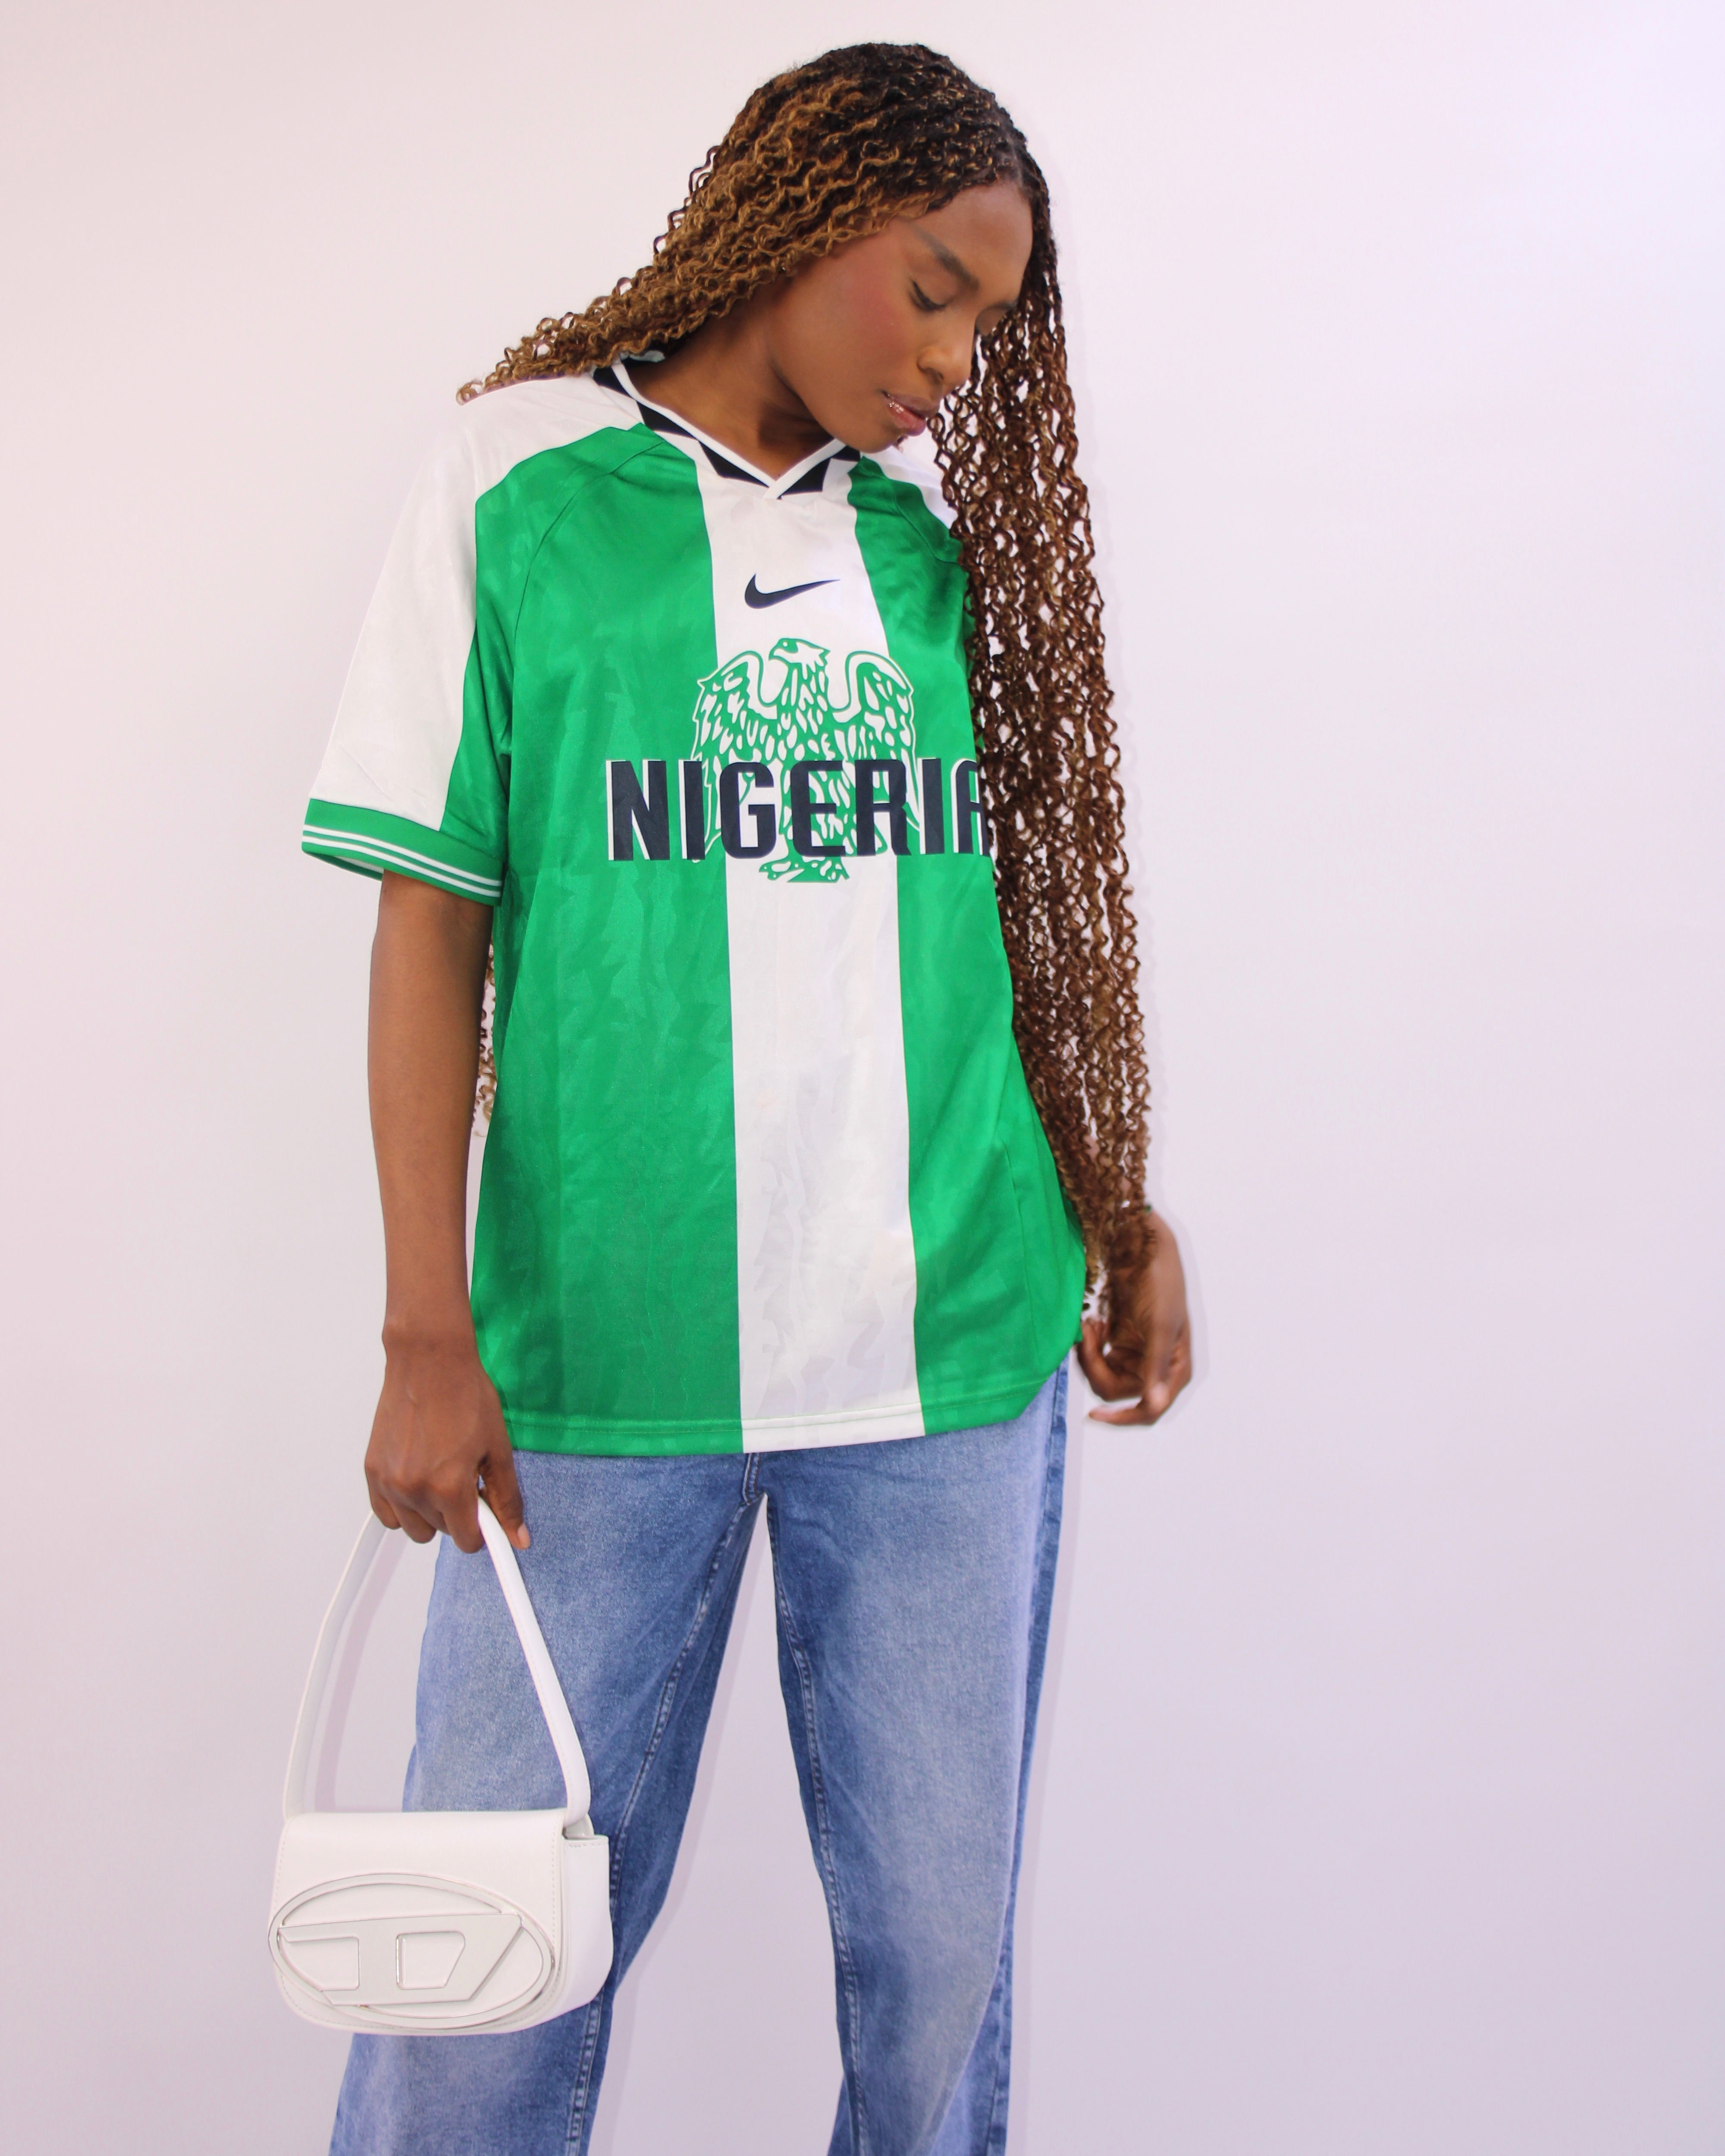 Retro Nigeria Away Jersey 1994 By Nike